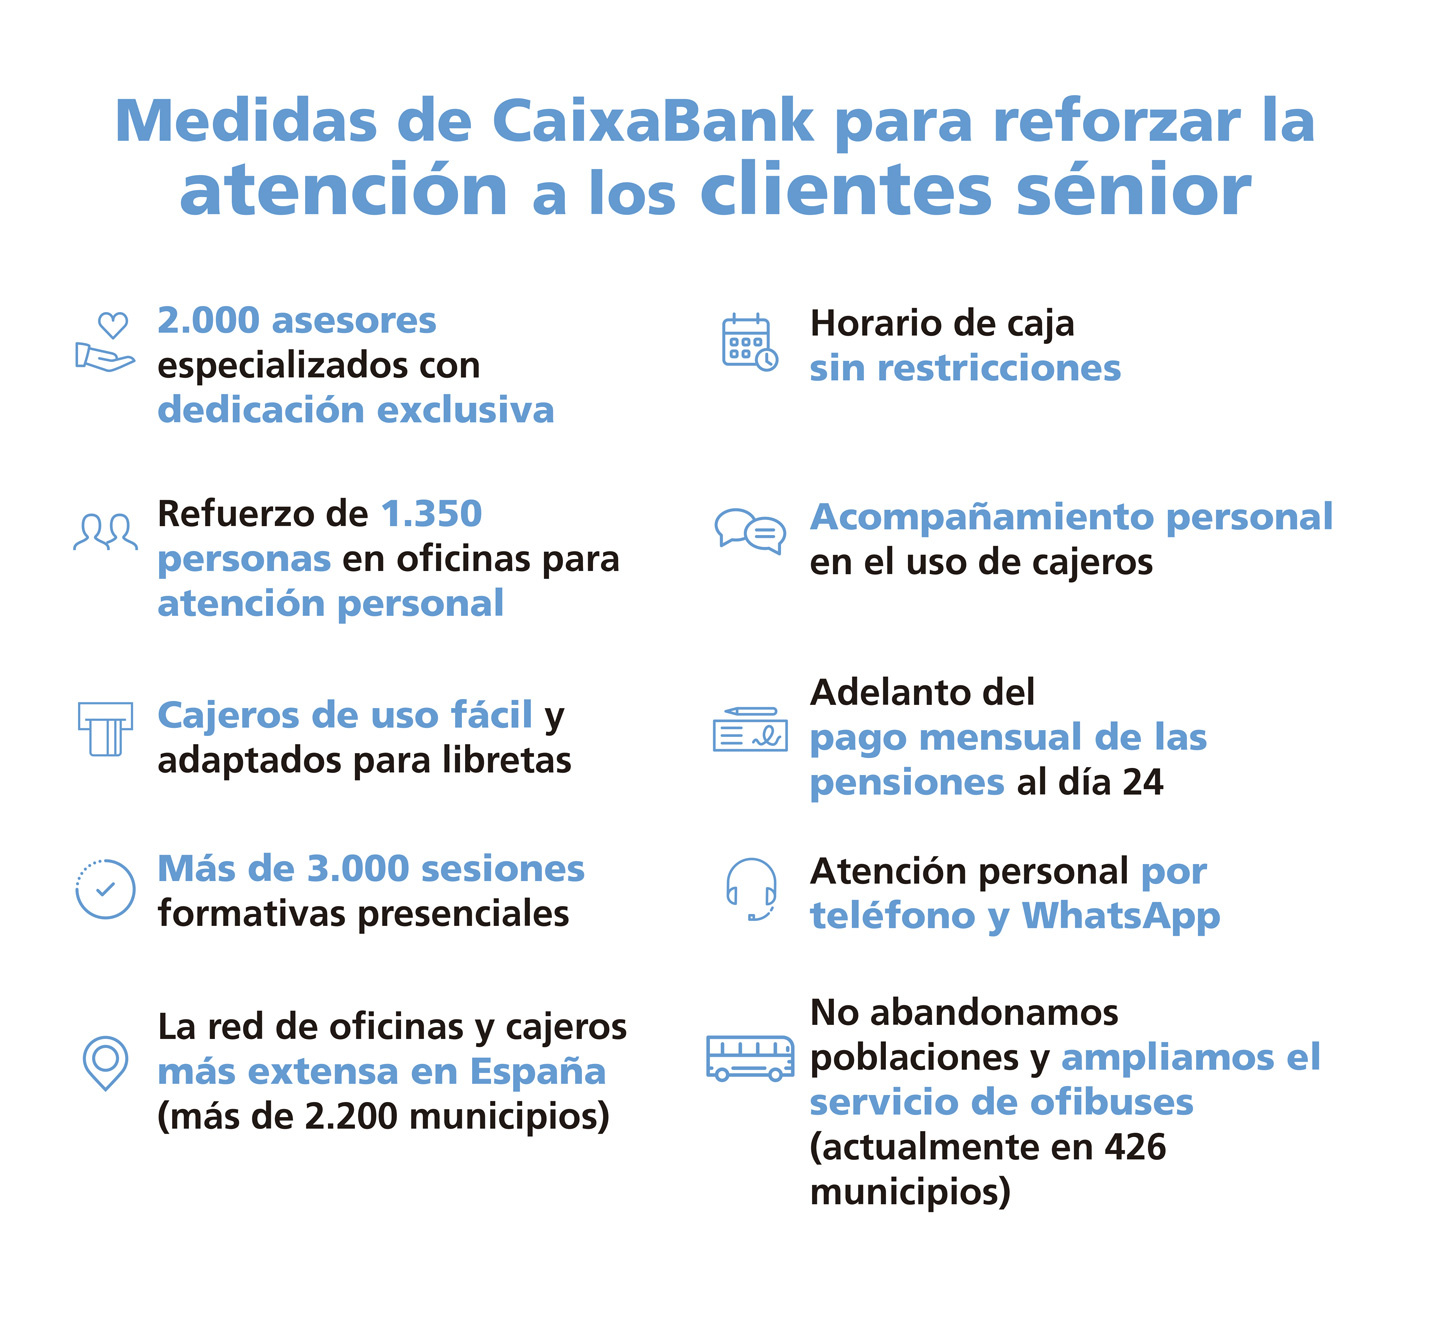 Medidas de CaixaBank para reforzar la atención de los clientes sénior.